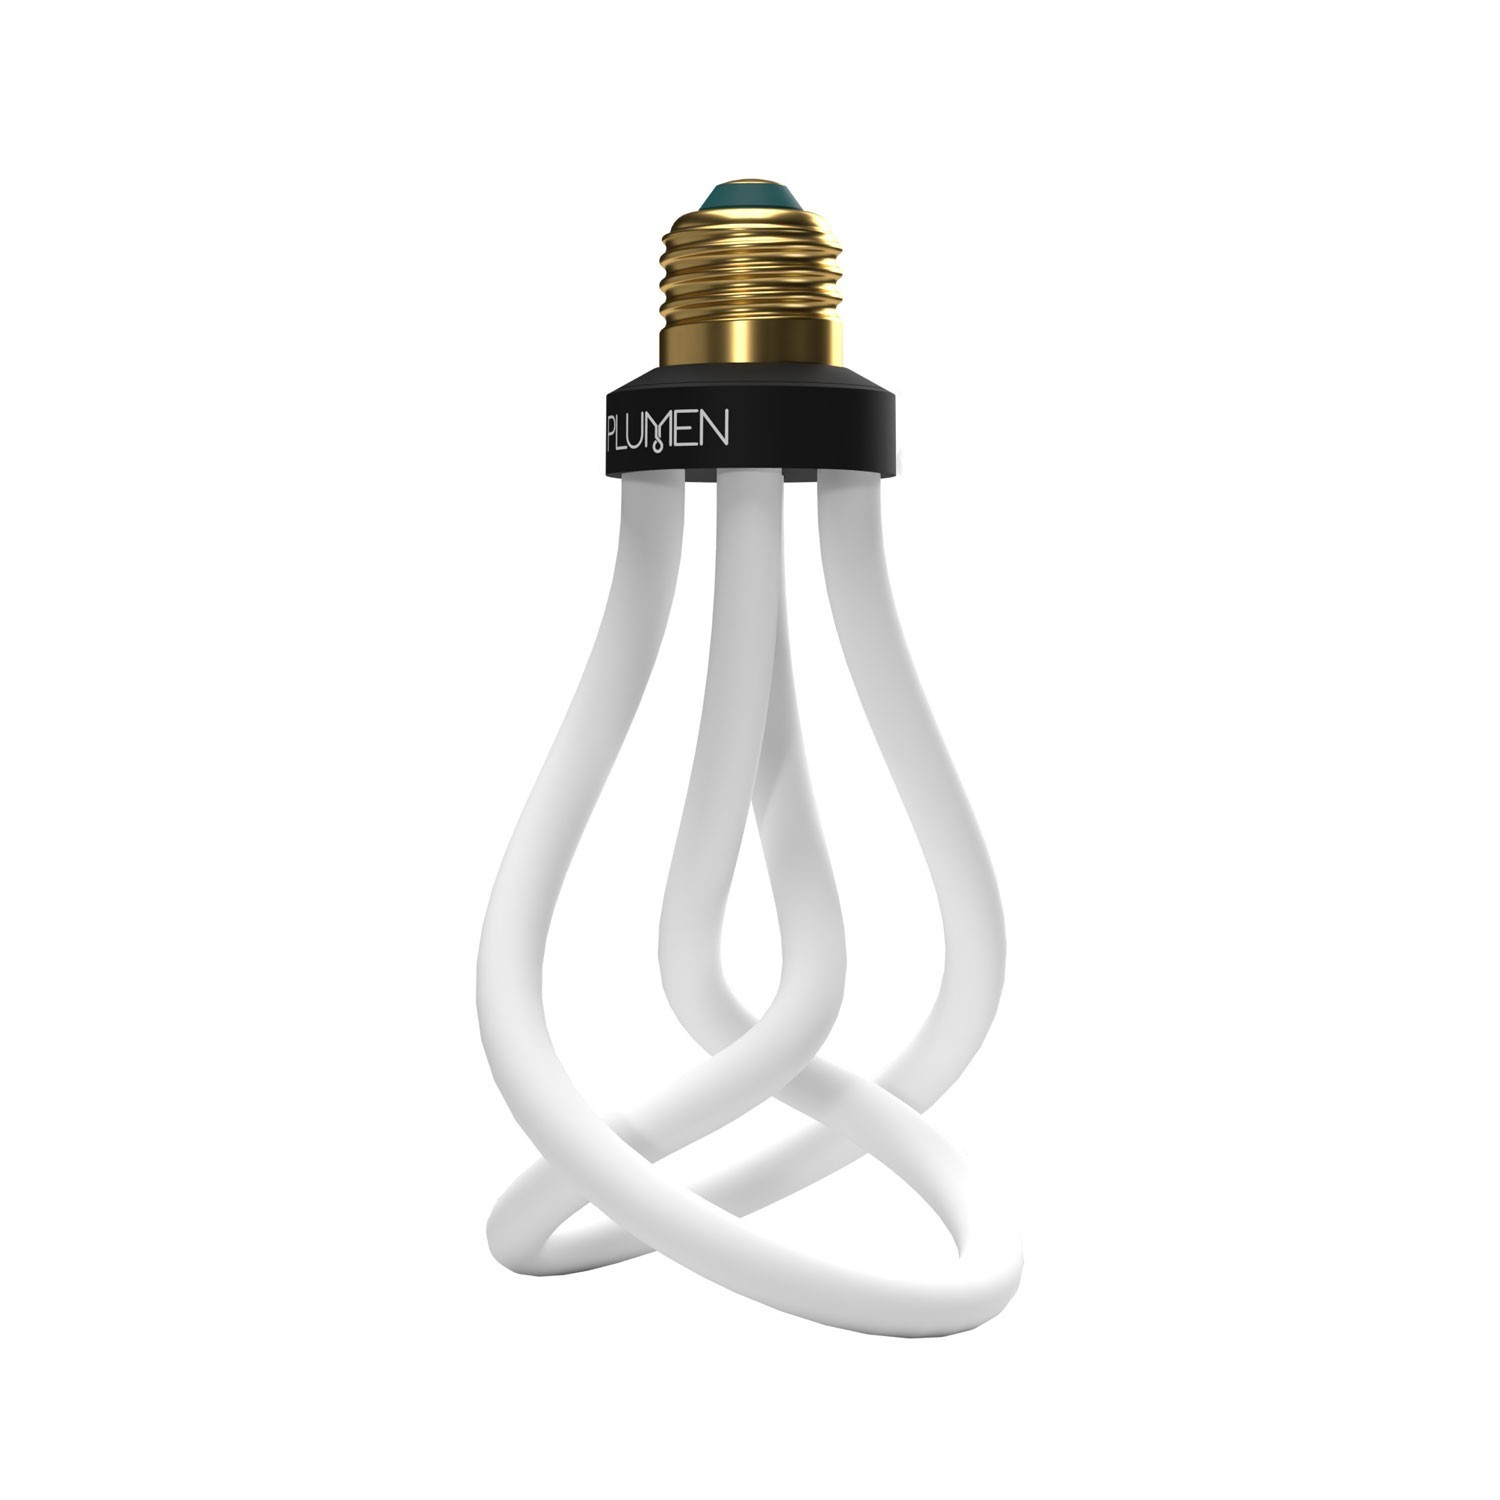 LED Light Bulb Plumen 001 6,5W E27 Dimmable 3500K